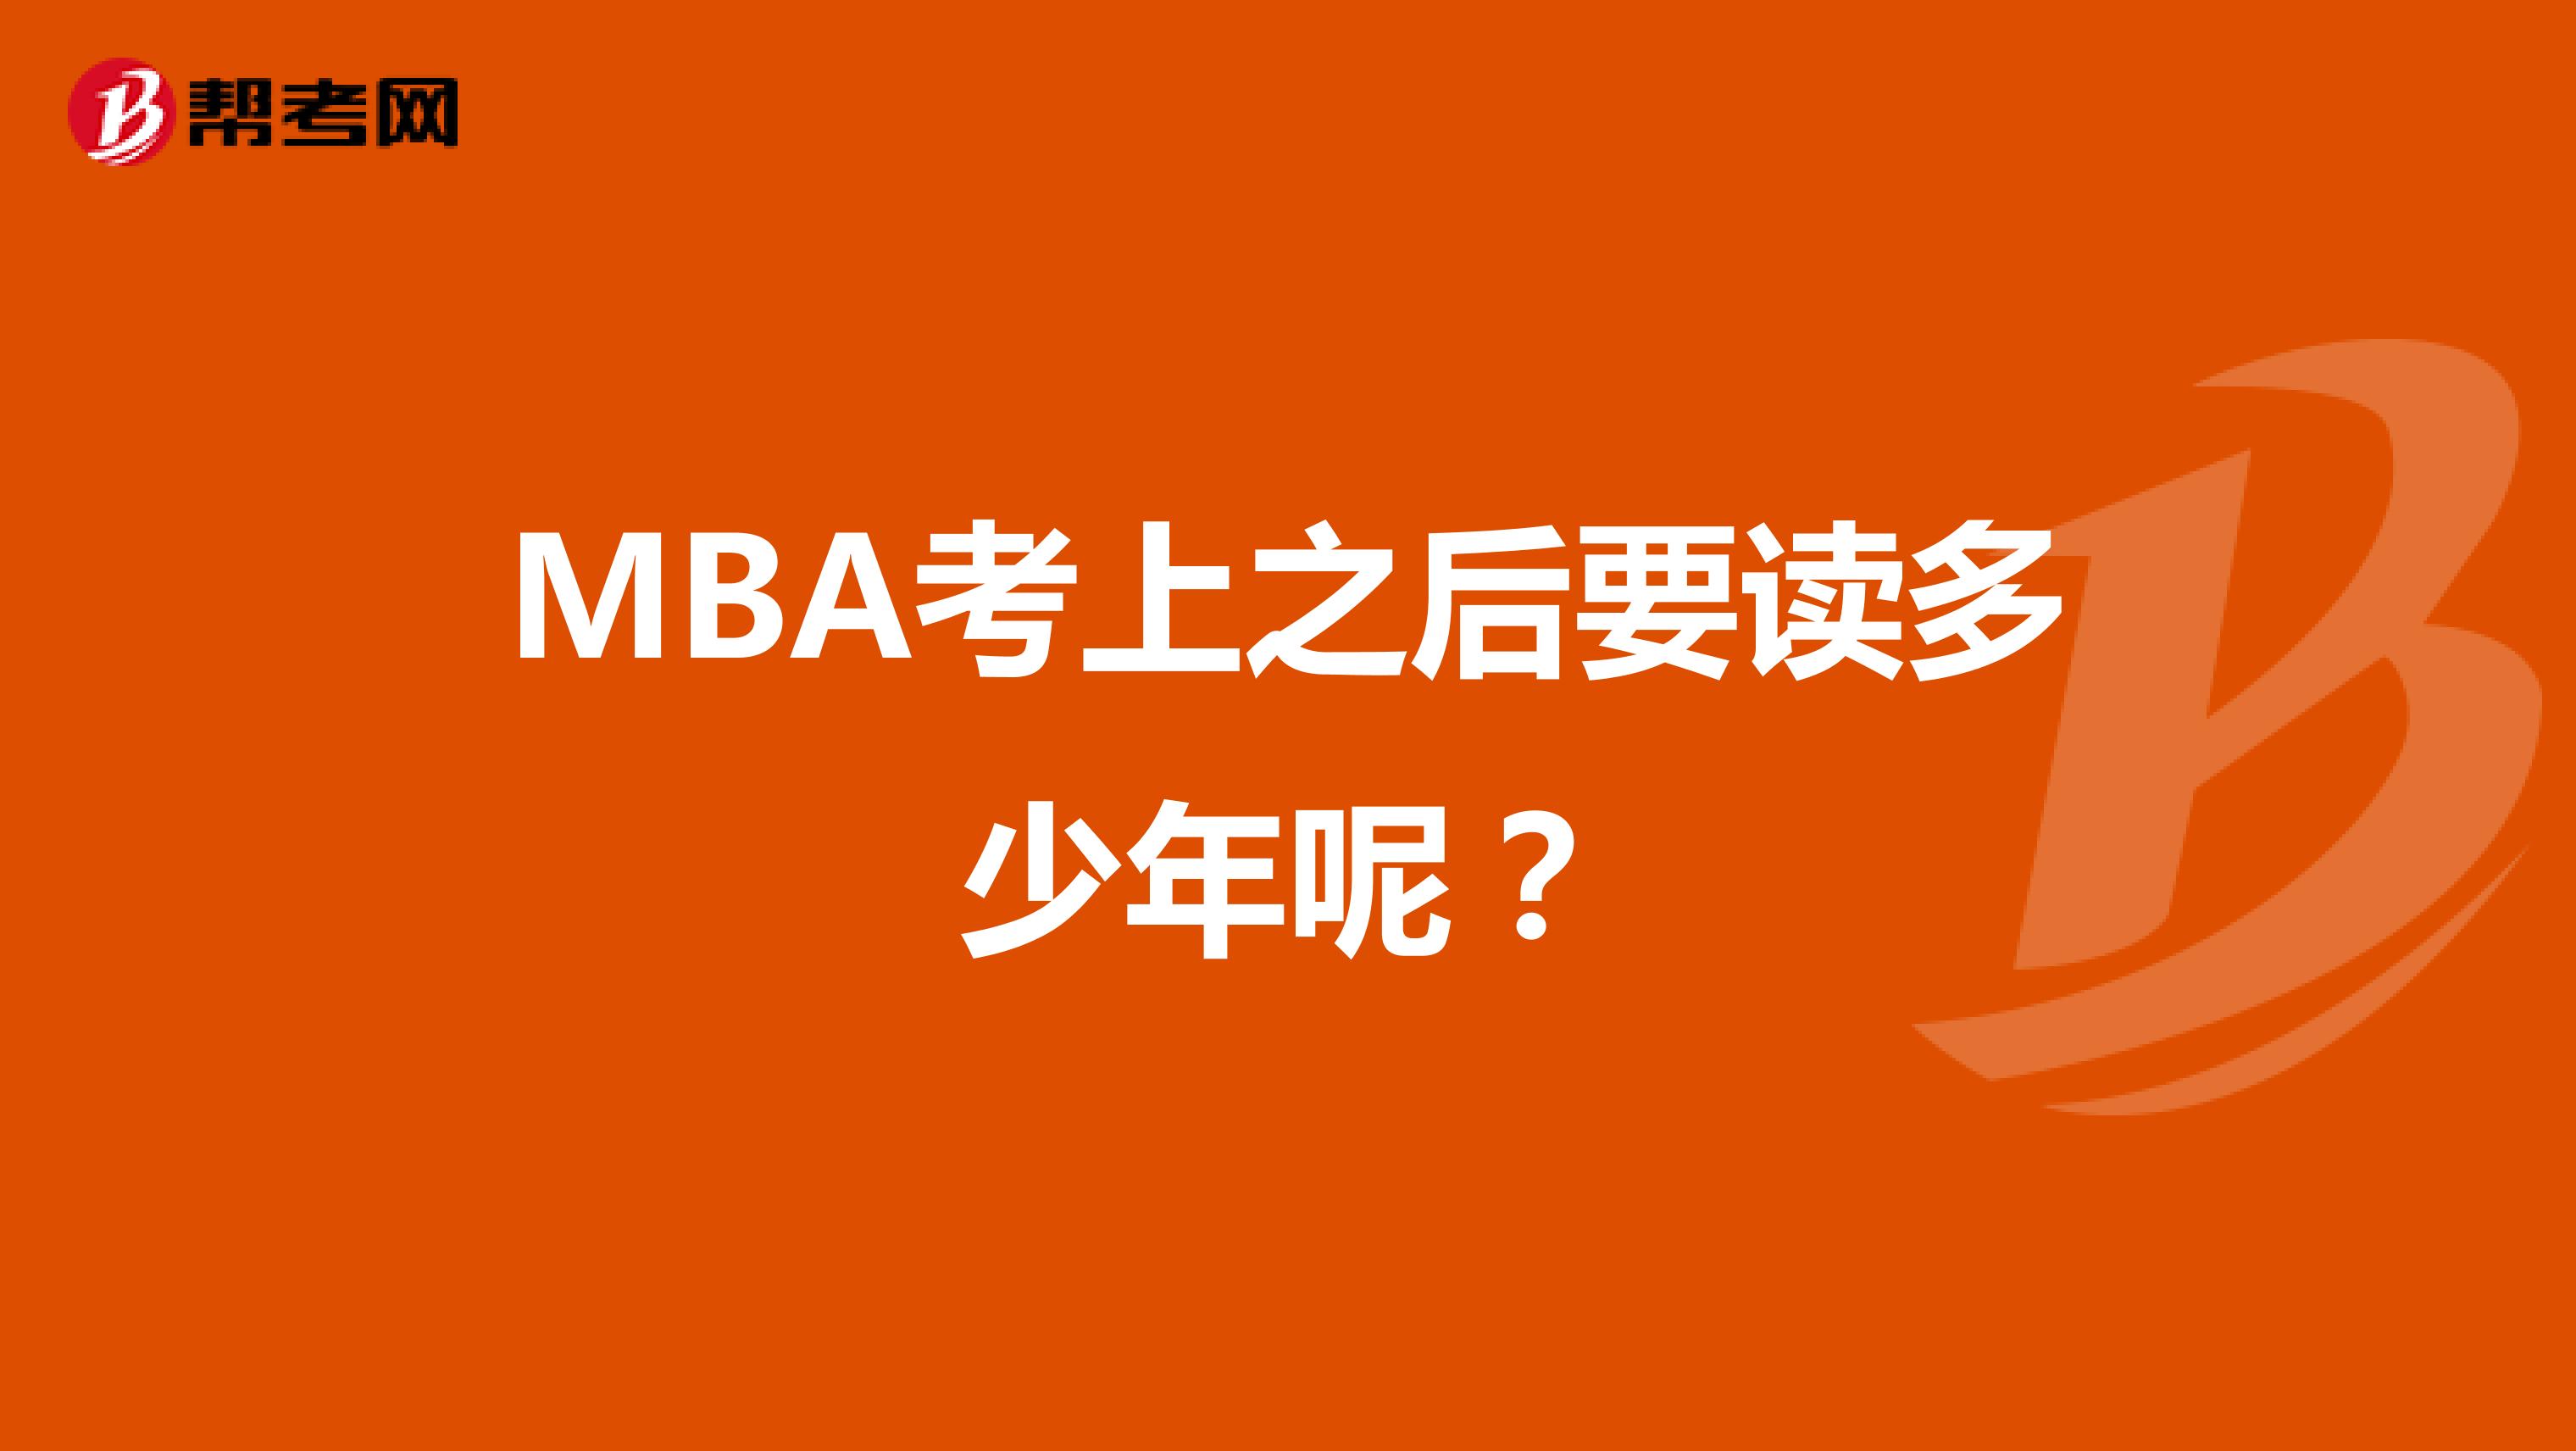 MBA考上之后要读多少年呢？